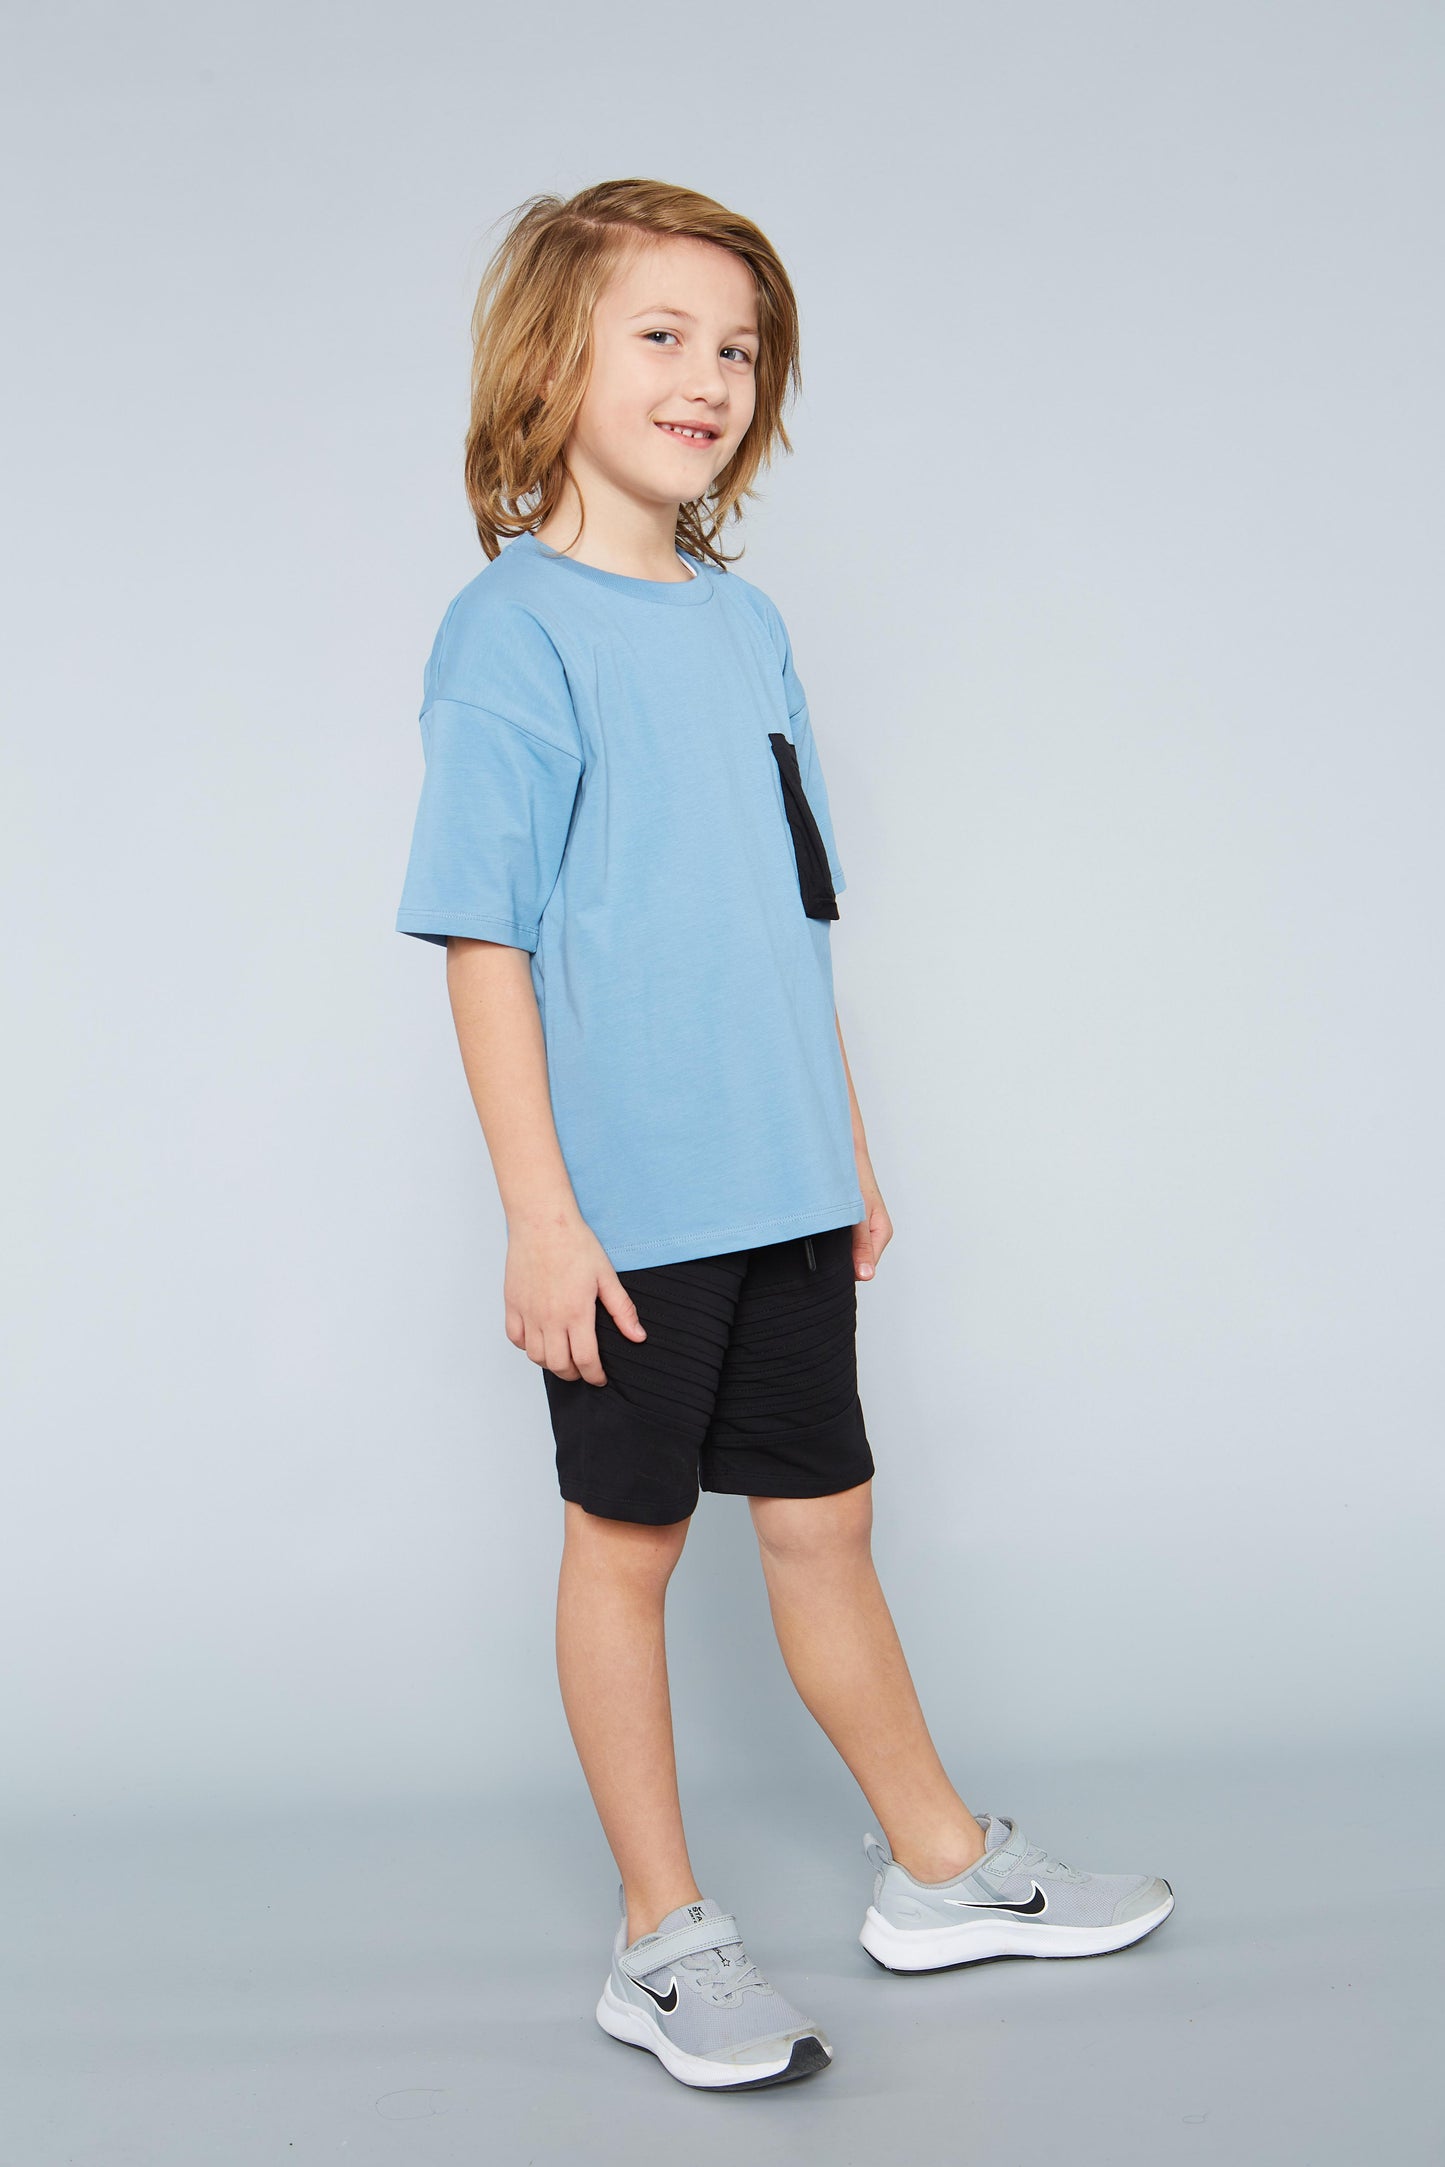 Children's Unisex 100% Cotton Summer T-Shirt with Pocket Detail